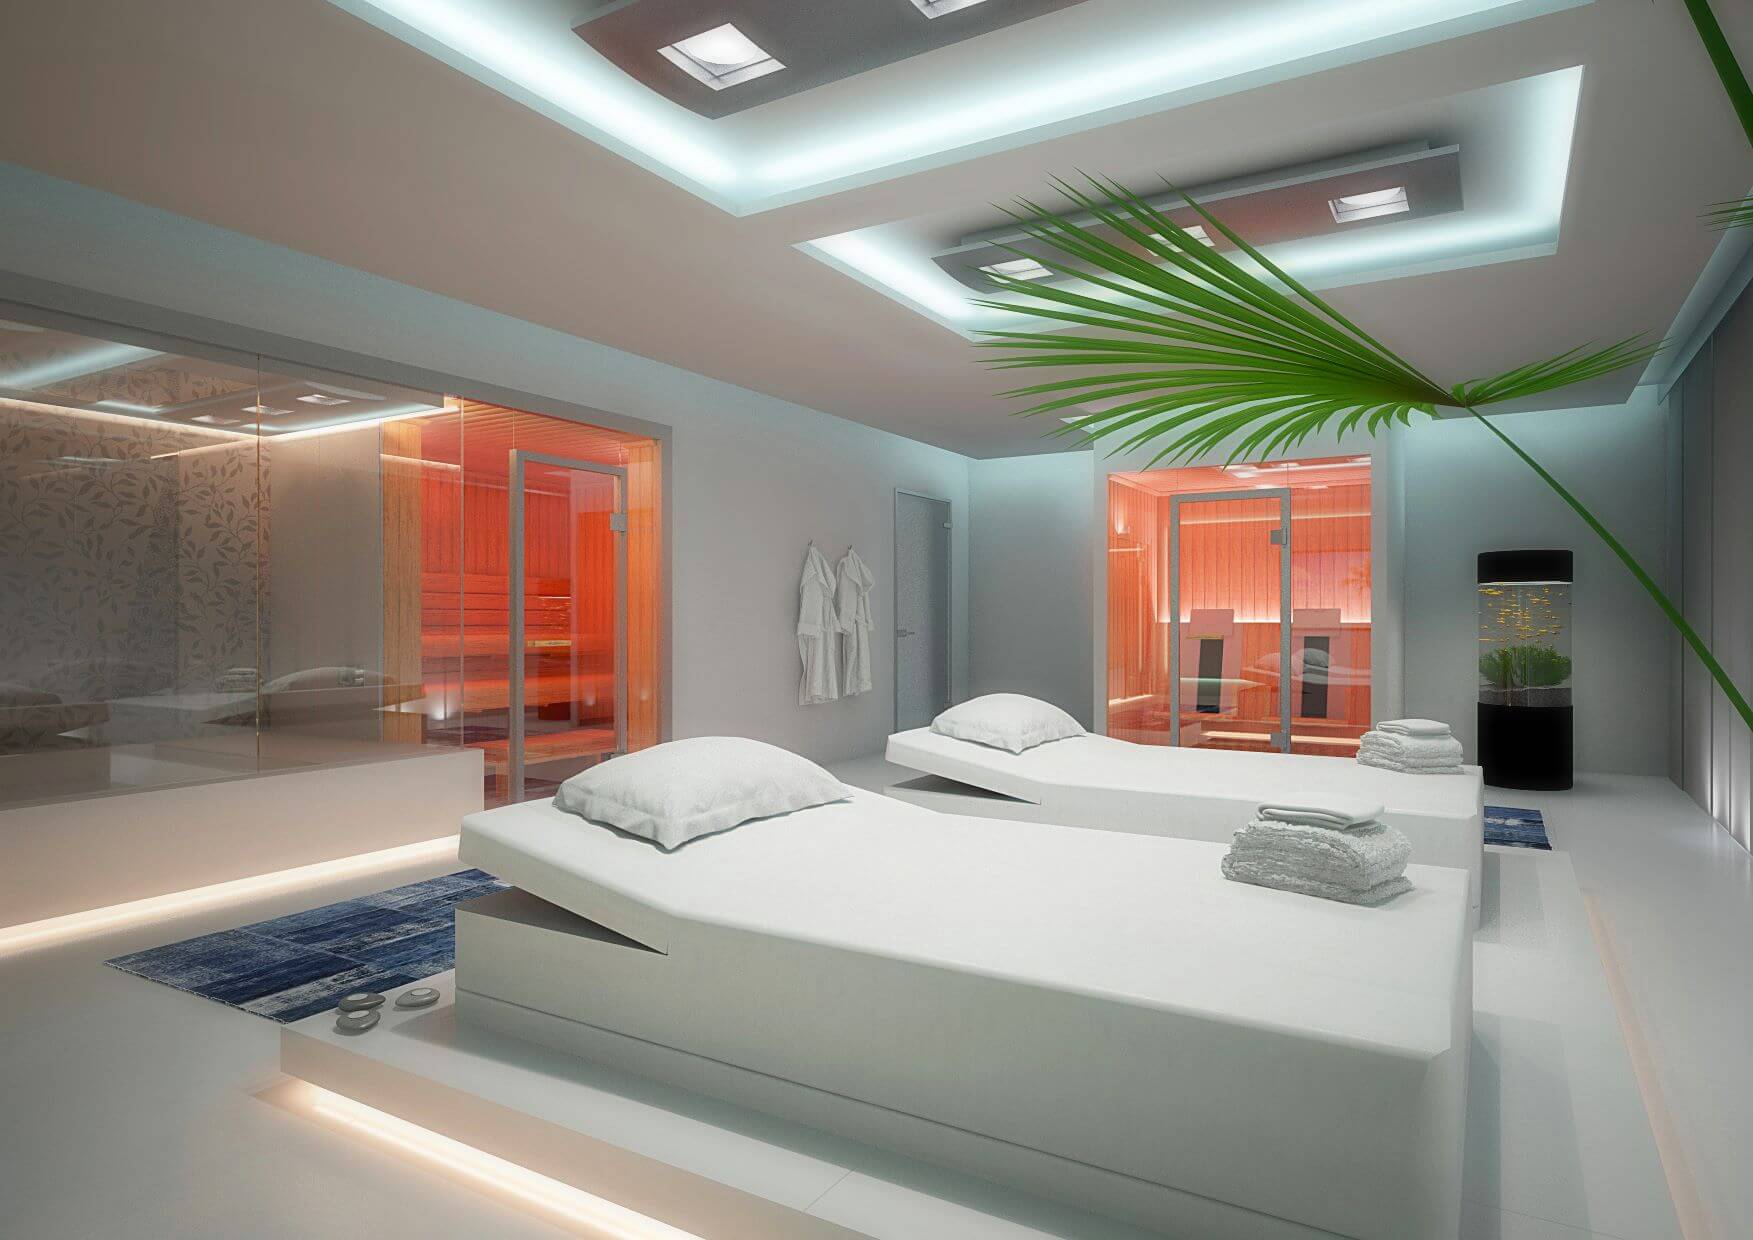 Helles Wellness-Badezimmer im Onsen-Stil mit orangenfarbigen Akzenten, weißer LED-Beleuchtung und Pflanzen-Dekoration